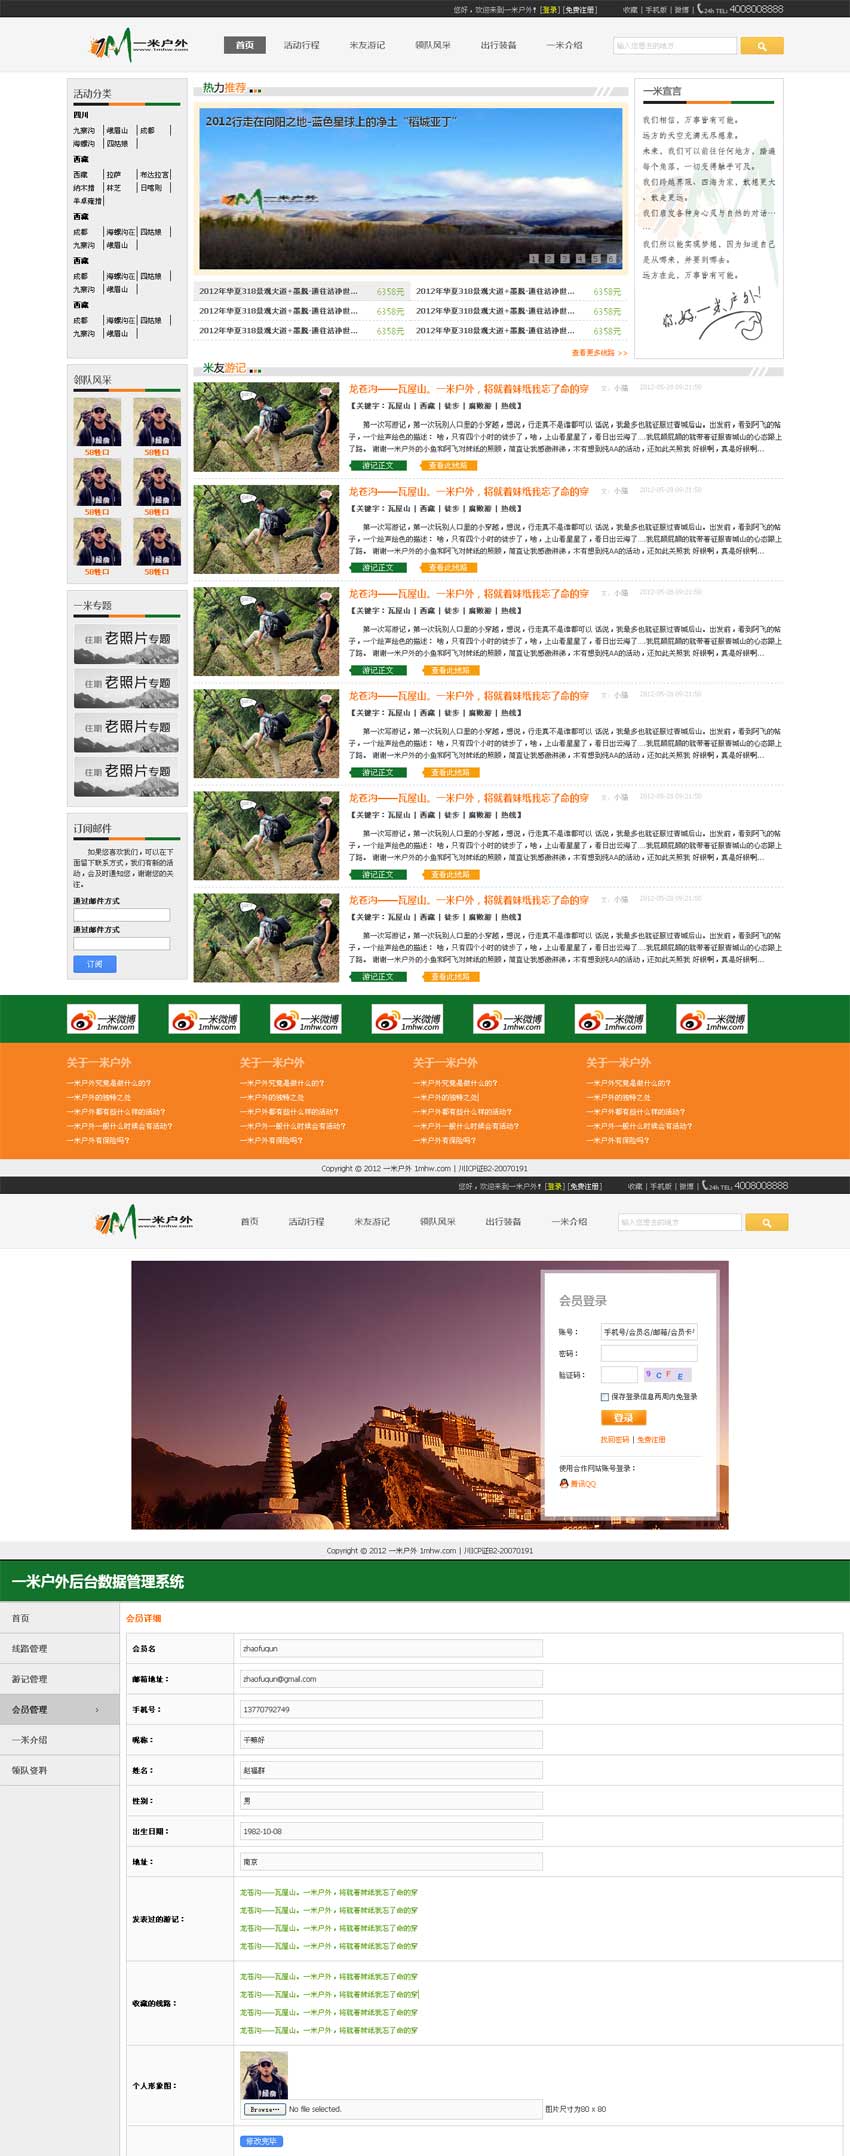 户外旅游行业网站模板html下载_企业网站模板插图源码资源库